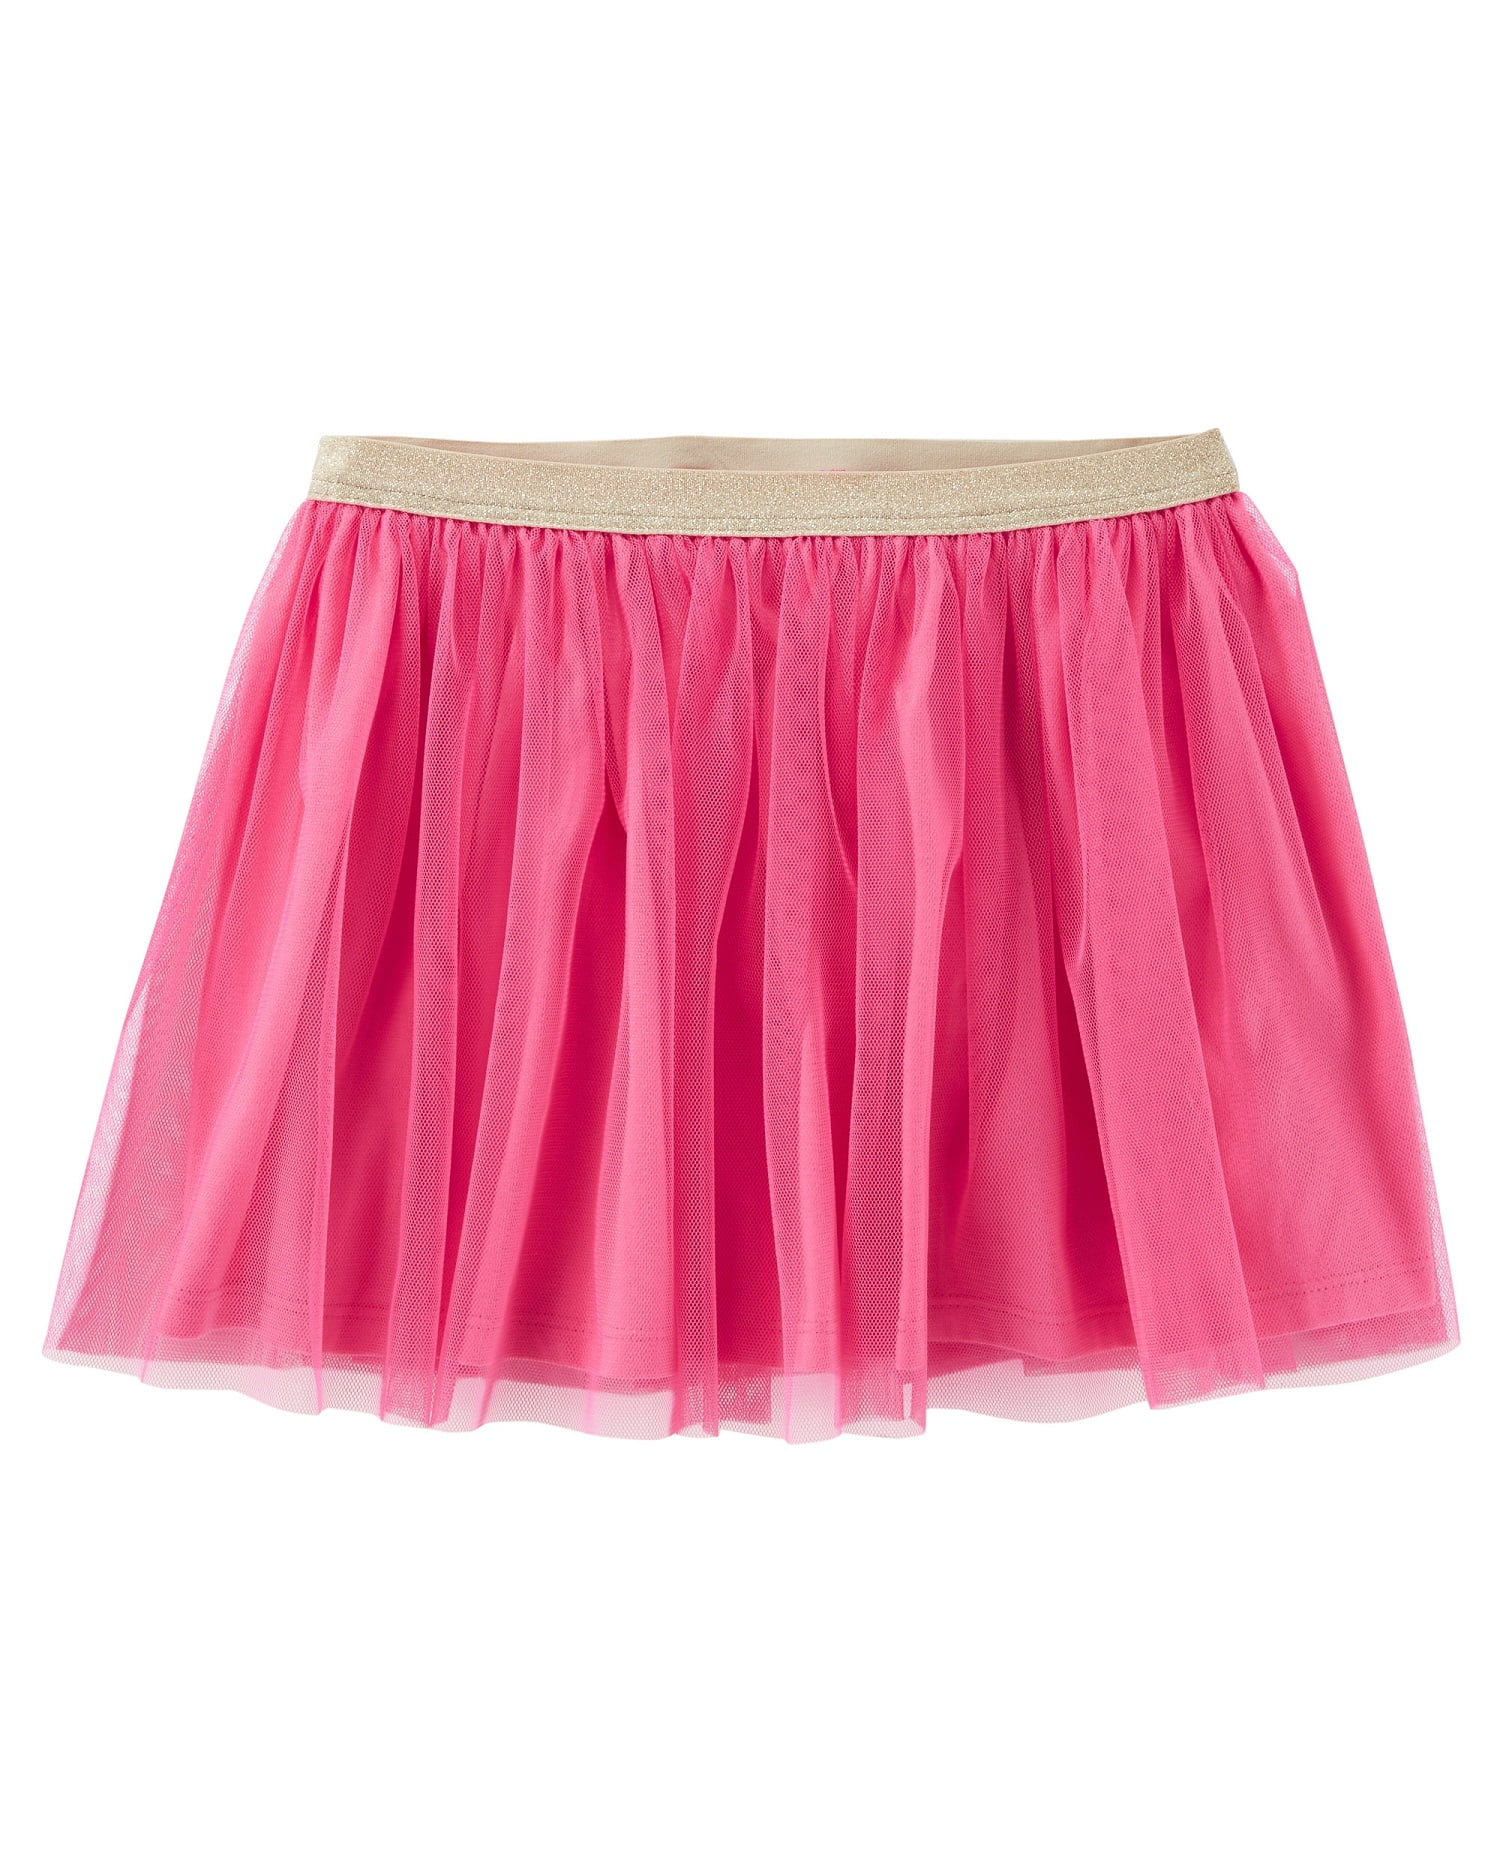 OshKosh BGosh Girls Uniform Skirt